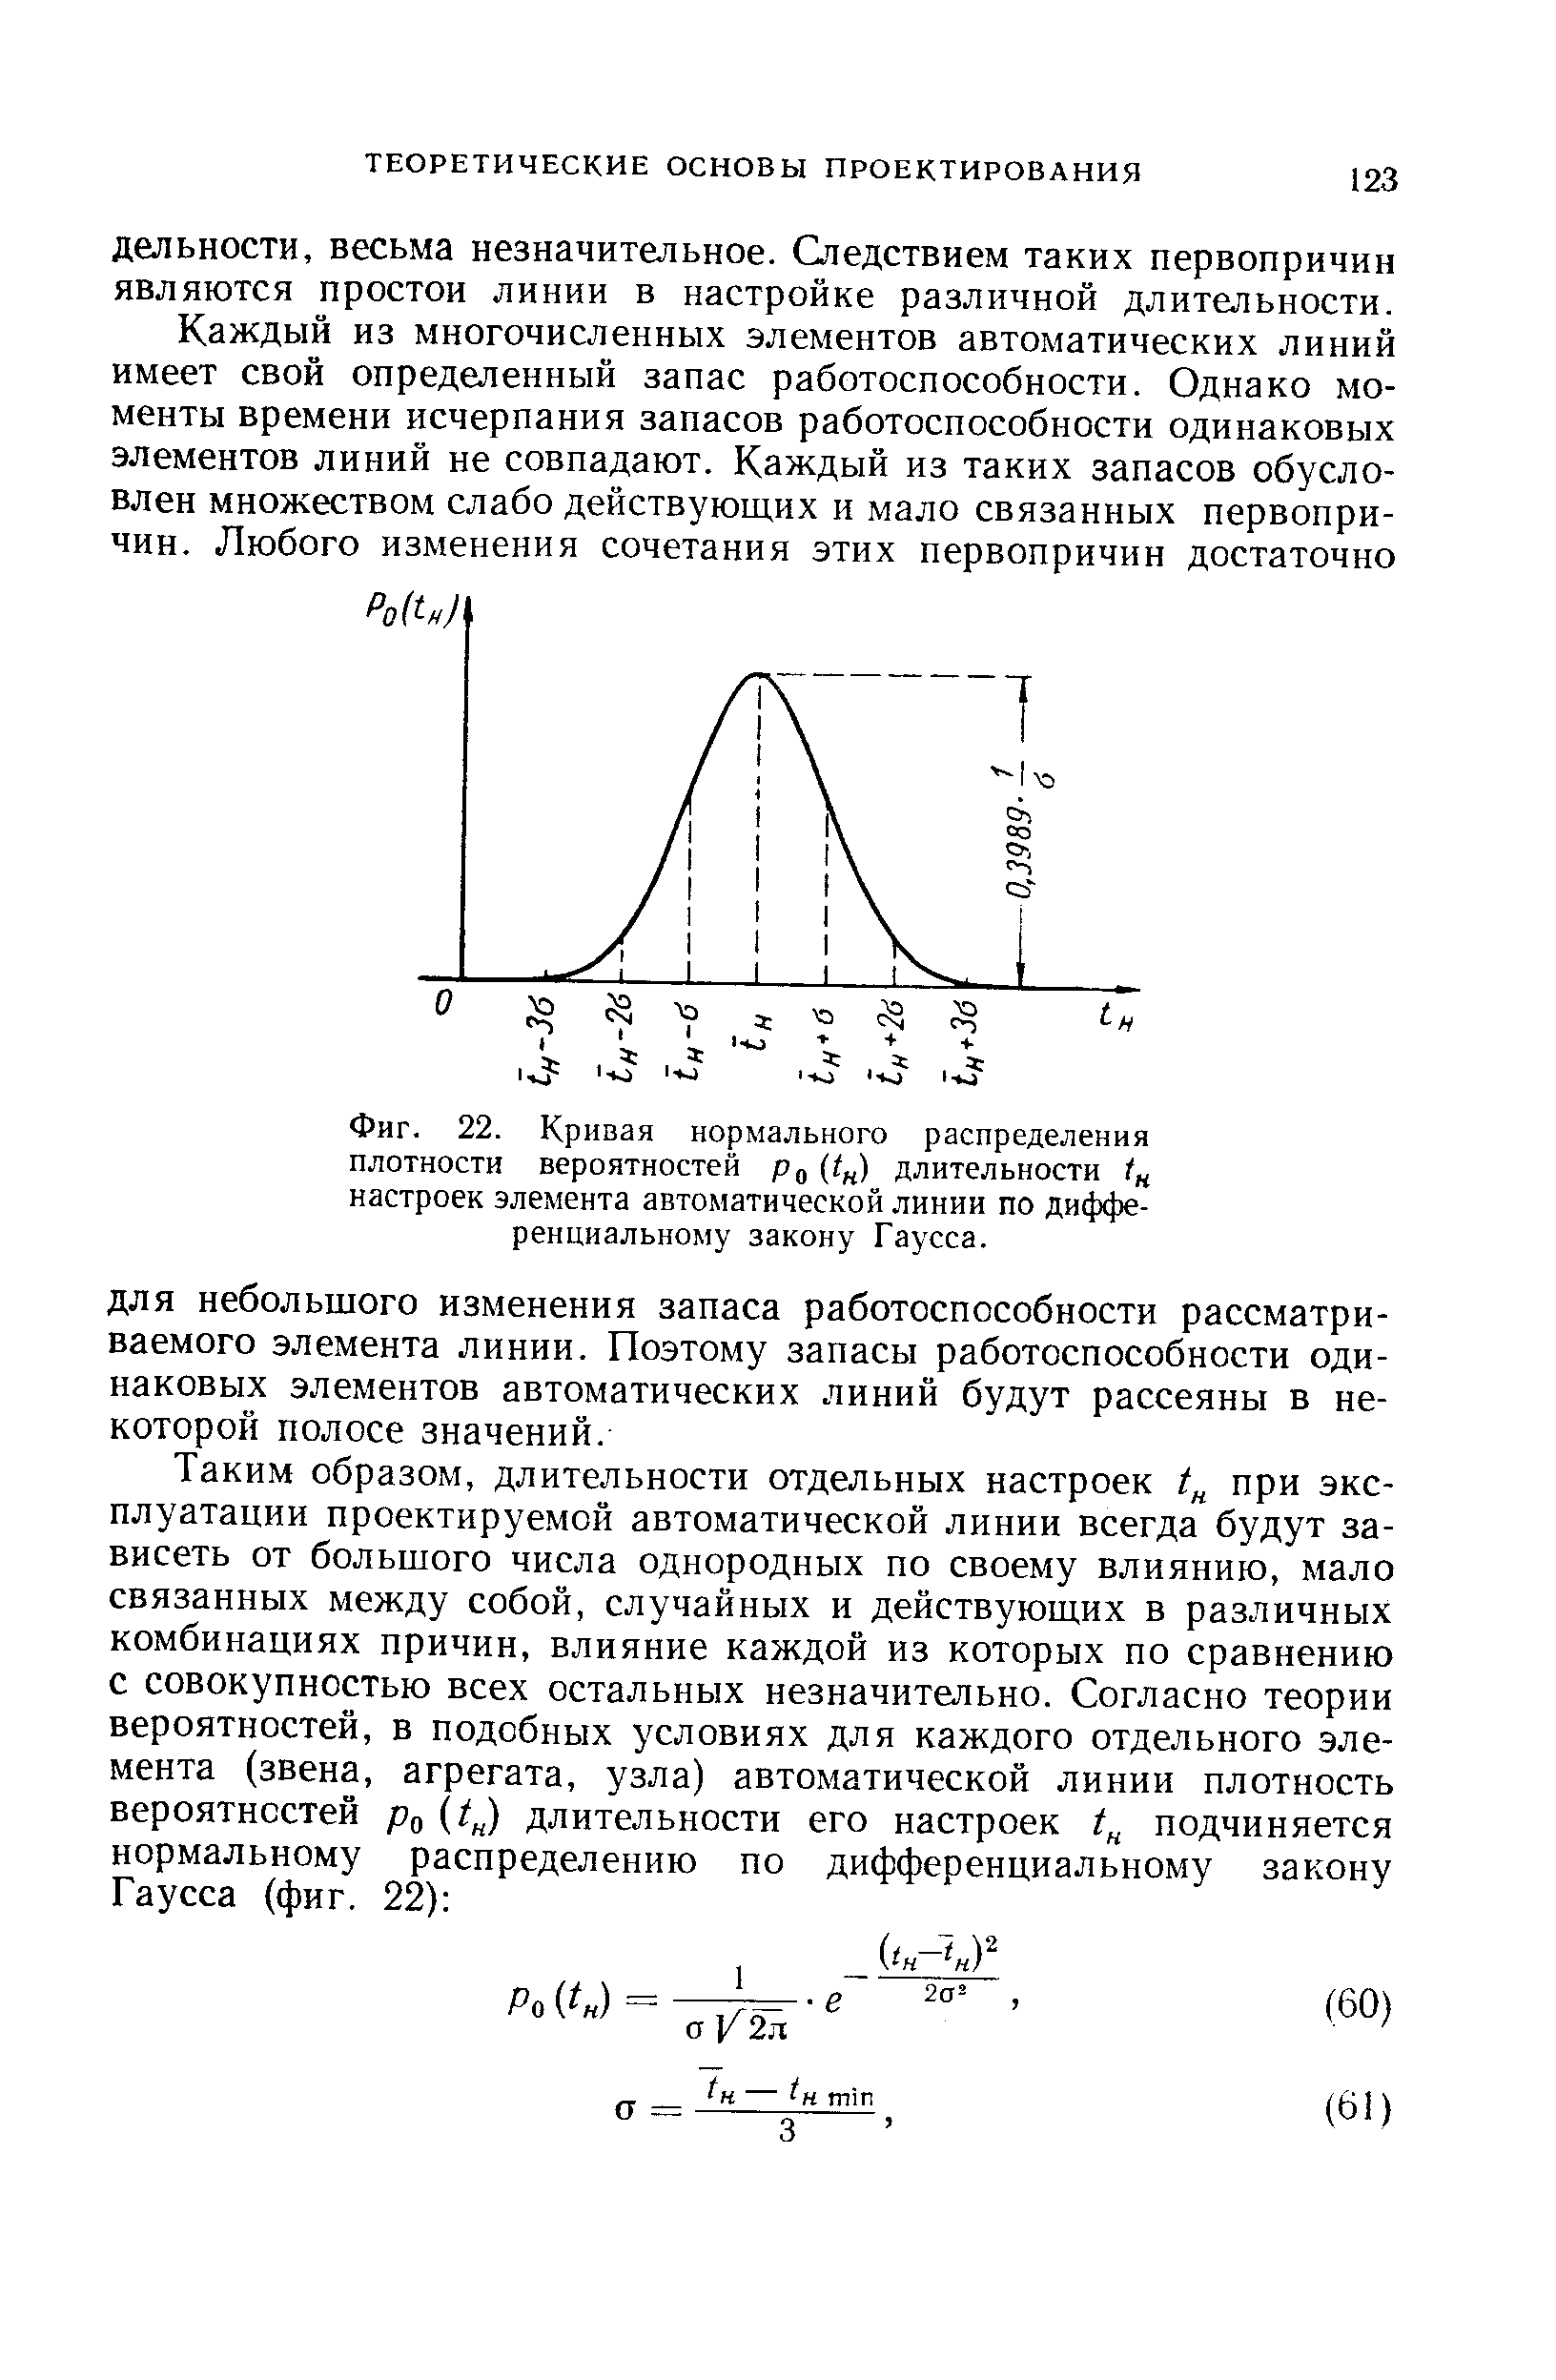 Фиг. 22. <a href="/info/277496">Кривая нормального распределения</a> <a href="/info/32938">плотности вероятностей</a> Рц (1 ) длительности настроек элемента <a href="/info/1902">автоматической линии</a> по дифференциальному закону Гаусса.
